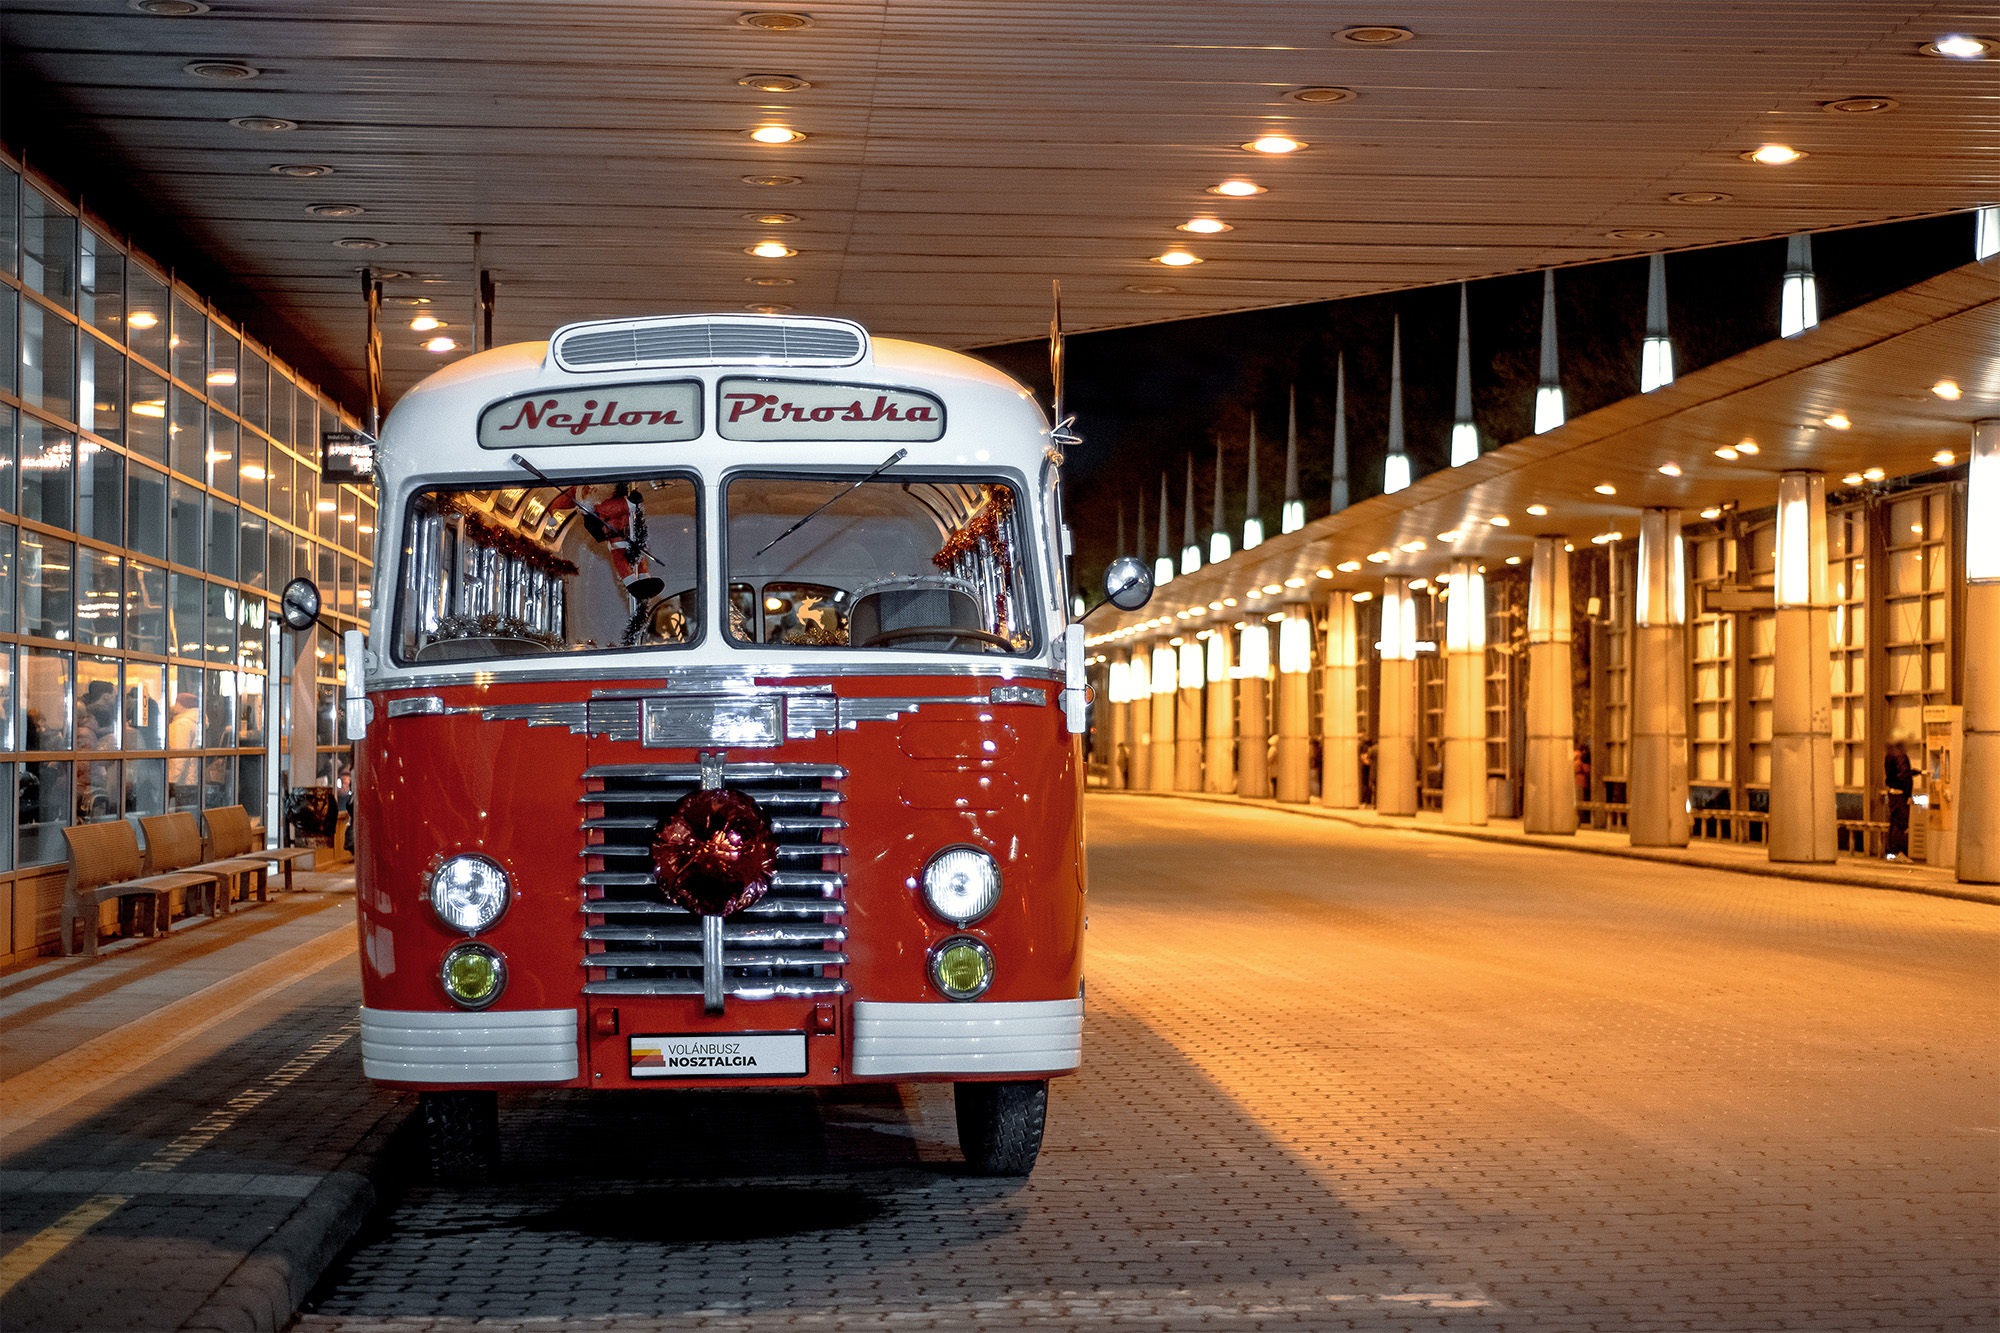 Nejlon Piroska a budapesti Népliget autóbusz-állomáson